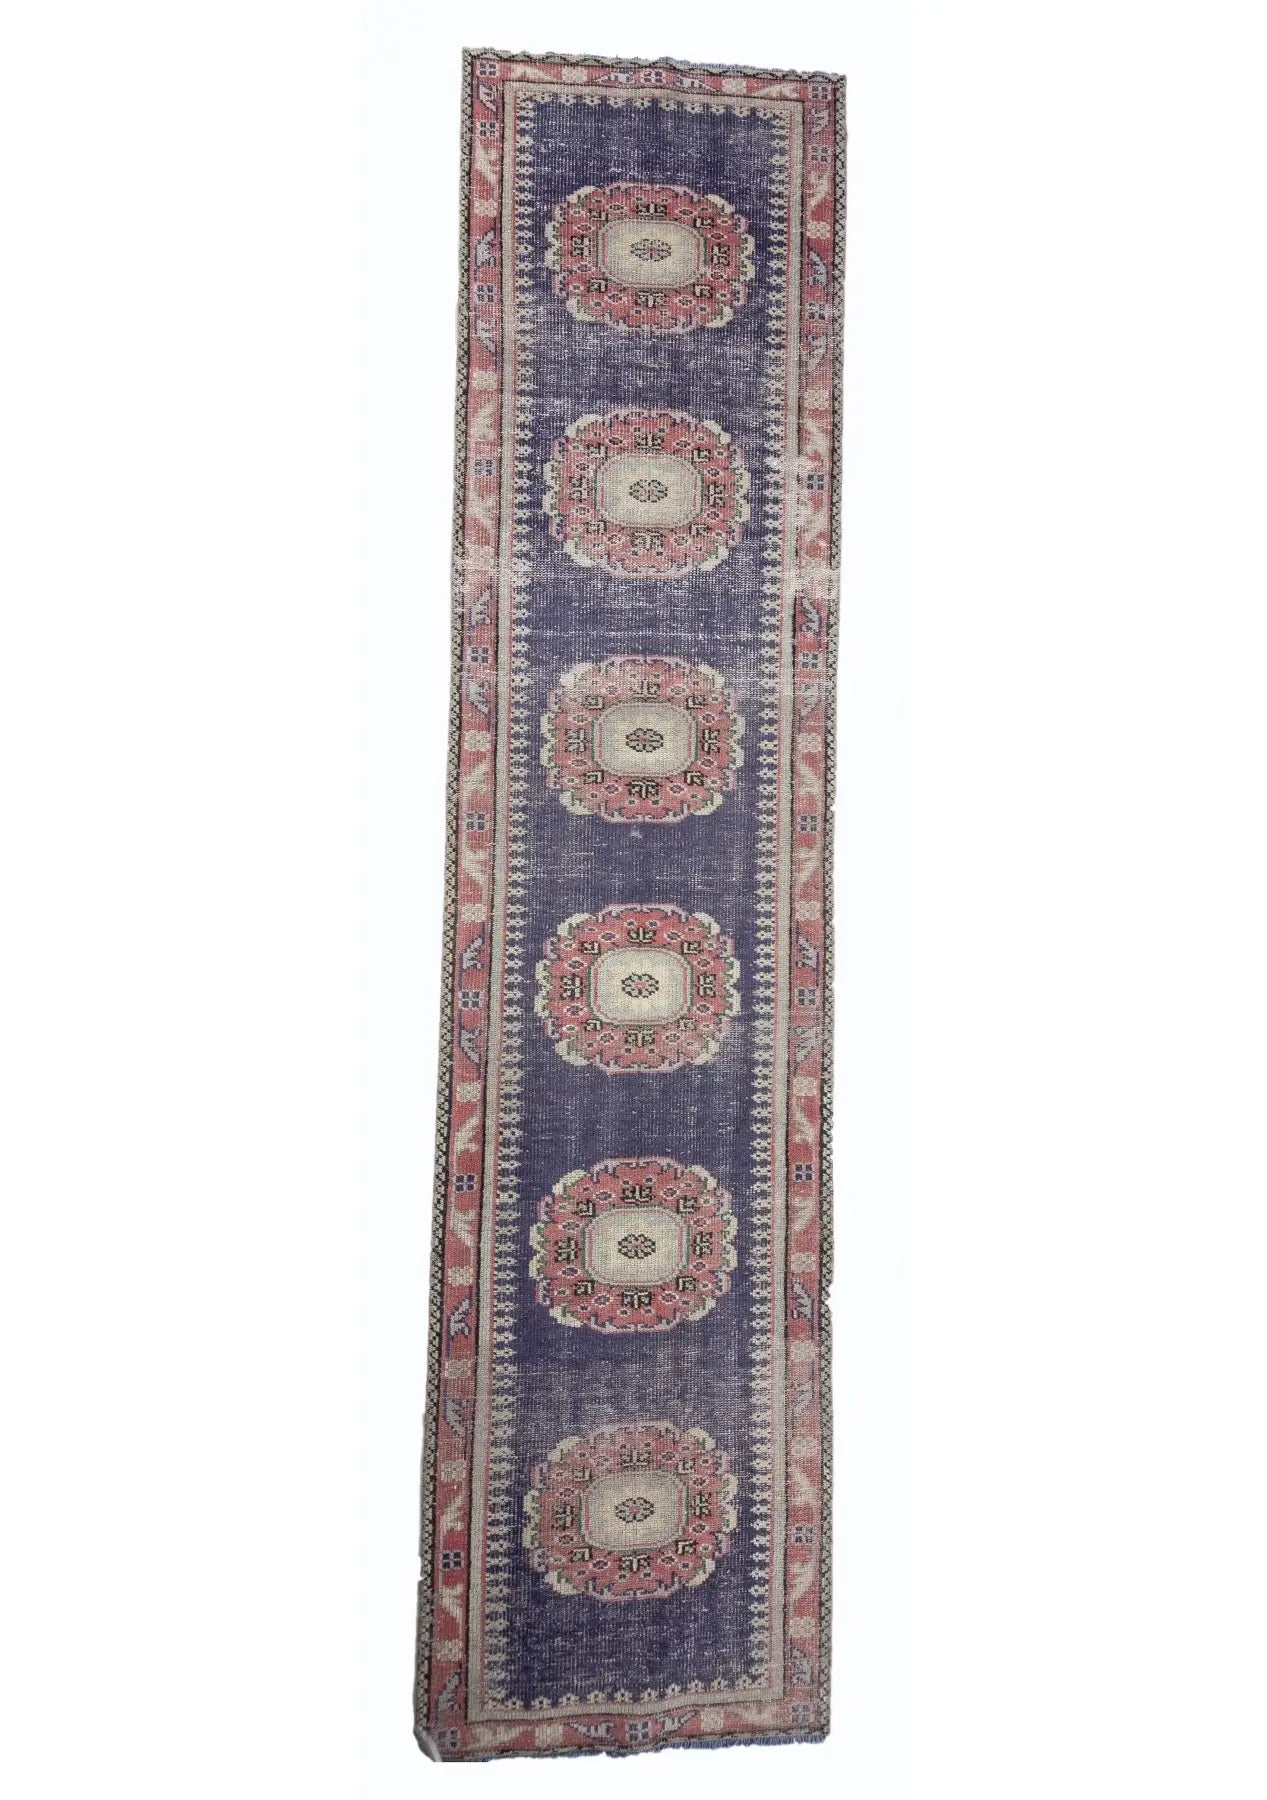 Idina - Vintage Anatolian Rug Runner - kudenrugs